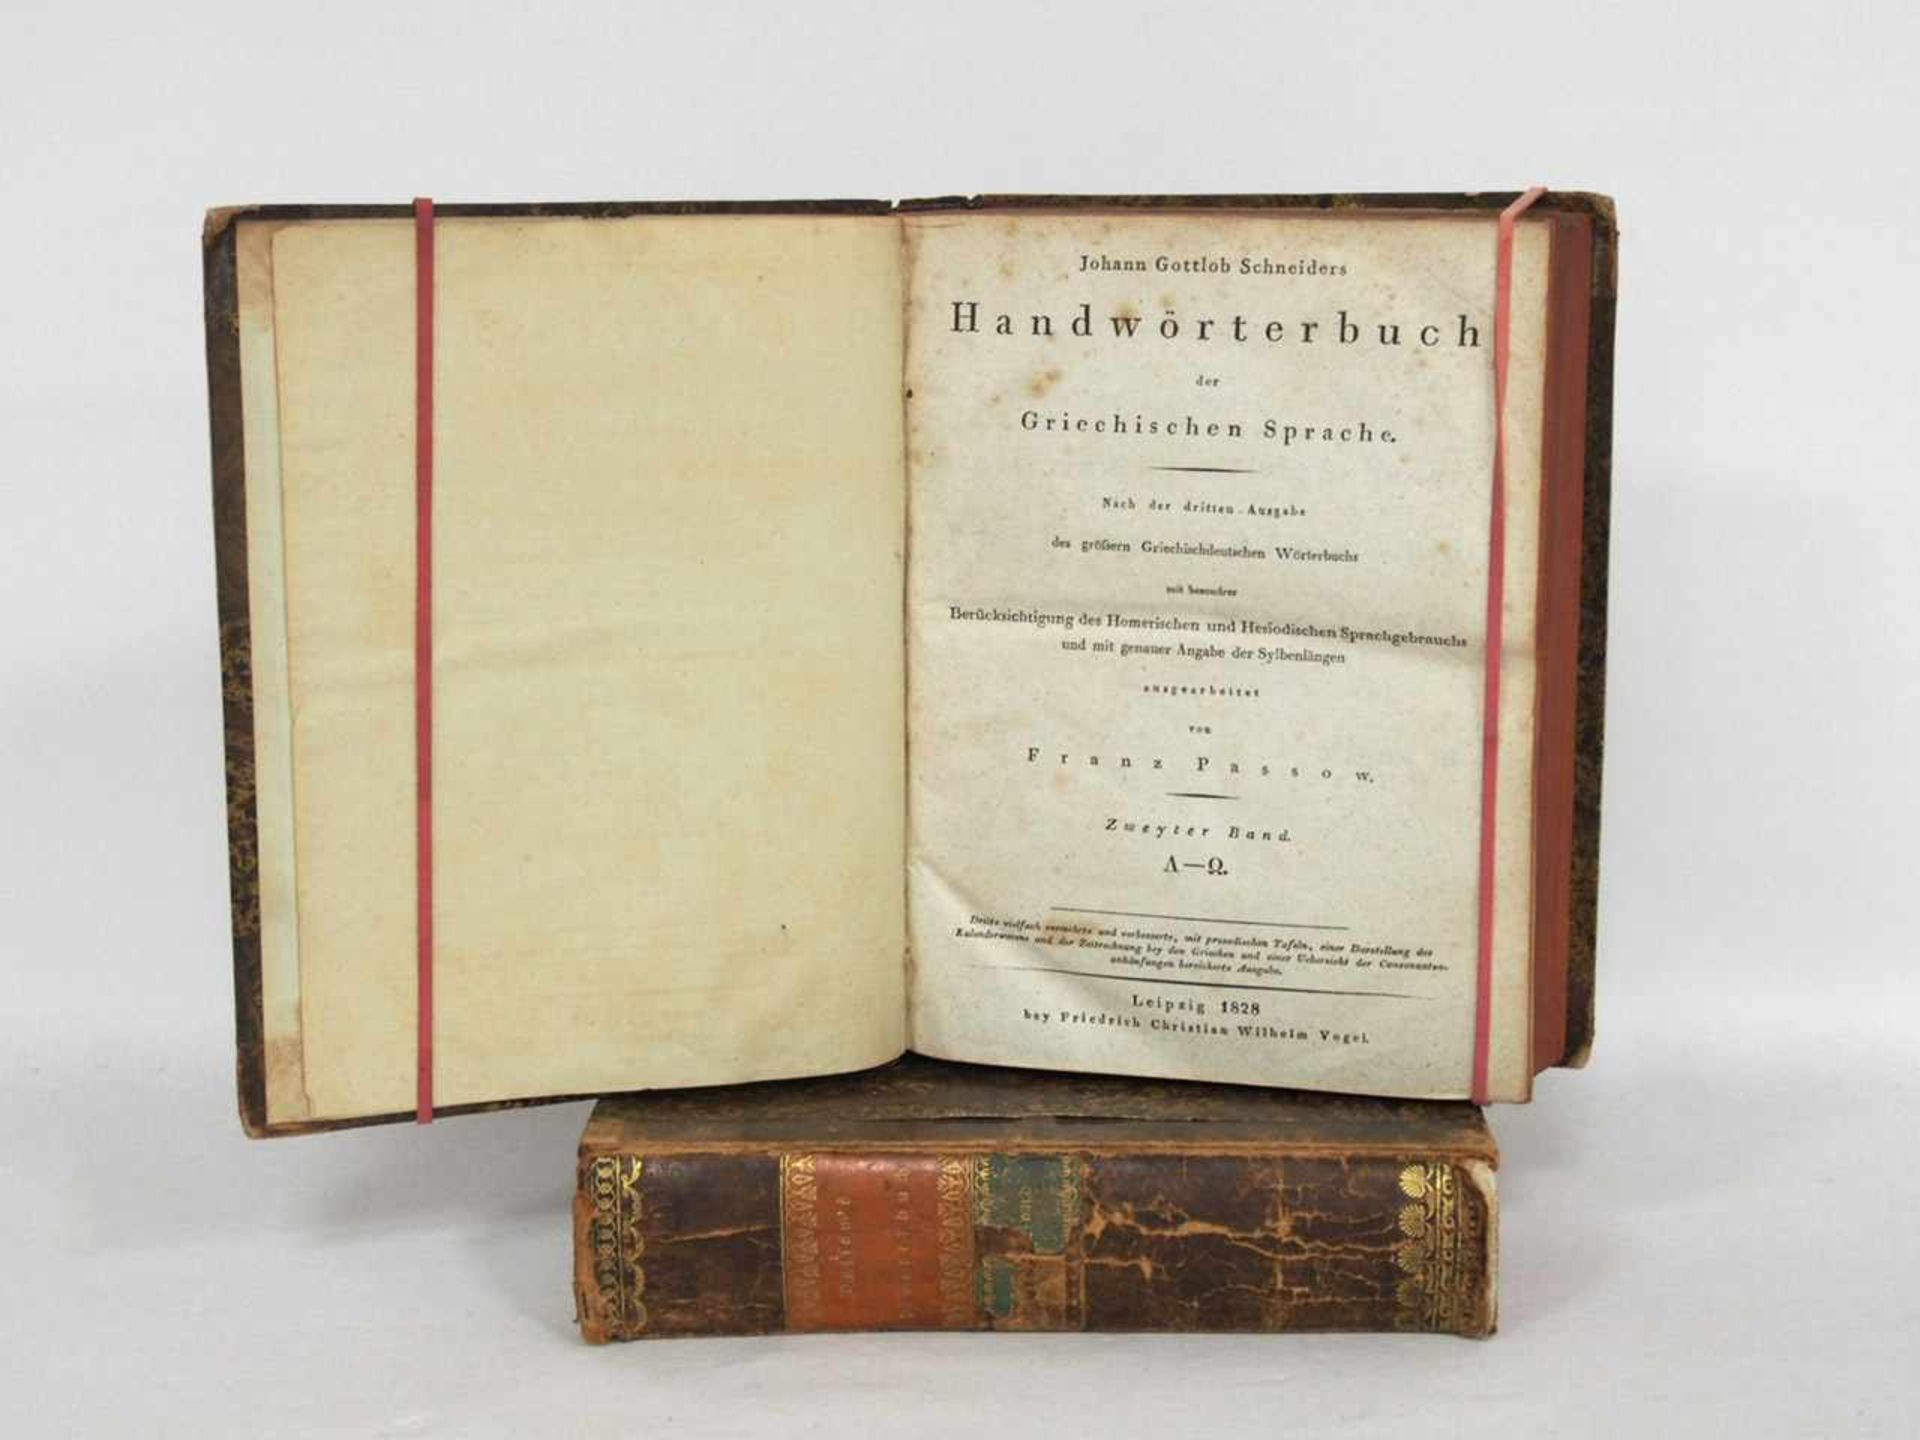 PASSOW, FranzJohann Gottlob Schneiders Handwörterbuch der Griechischen SpracheBand I-II, Leipzig